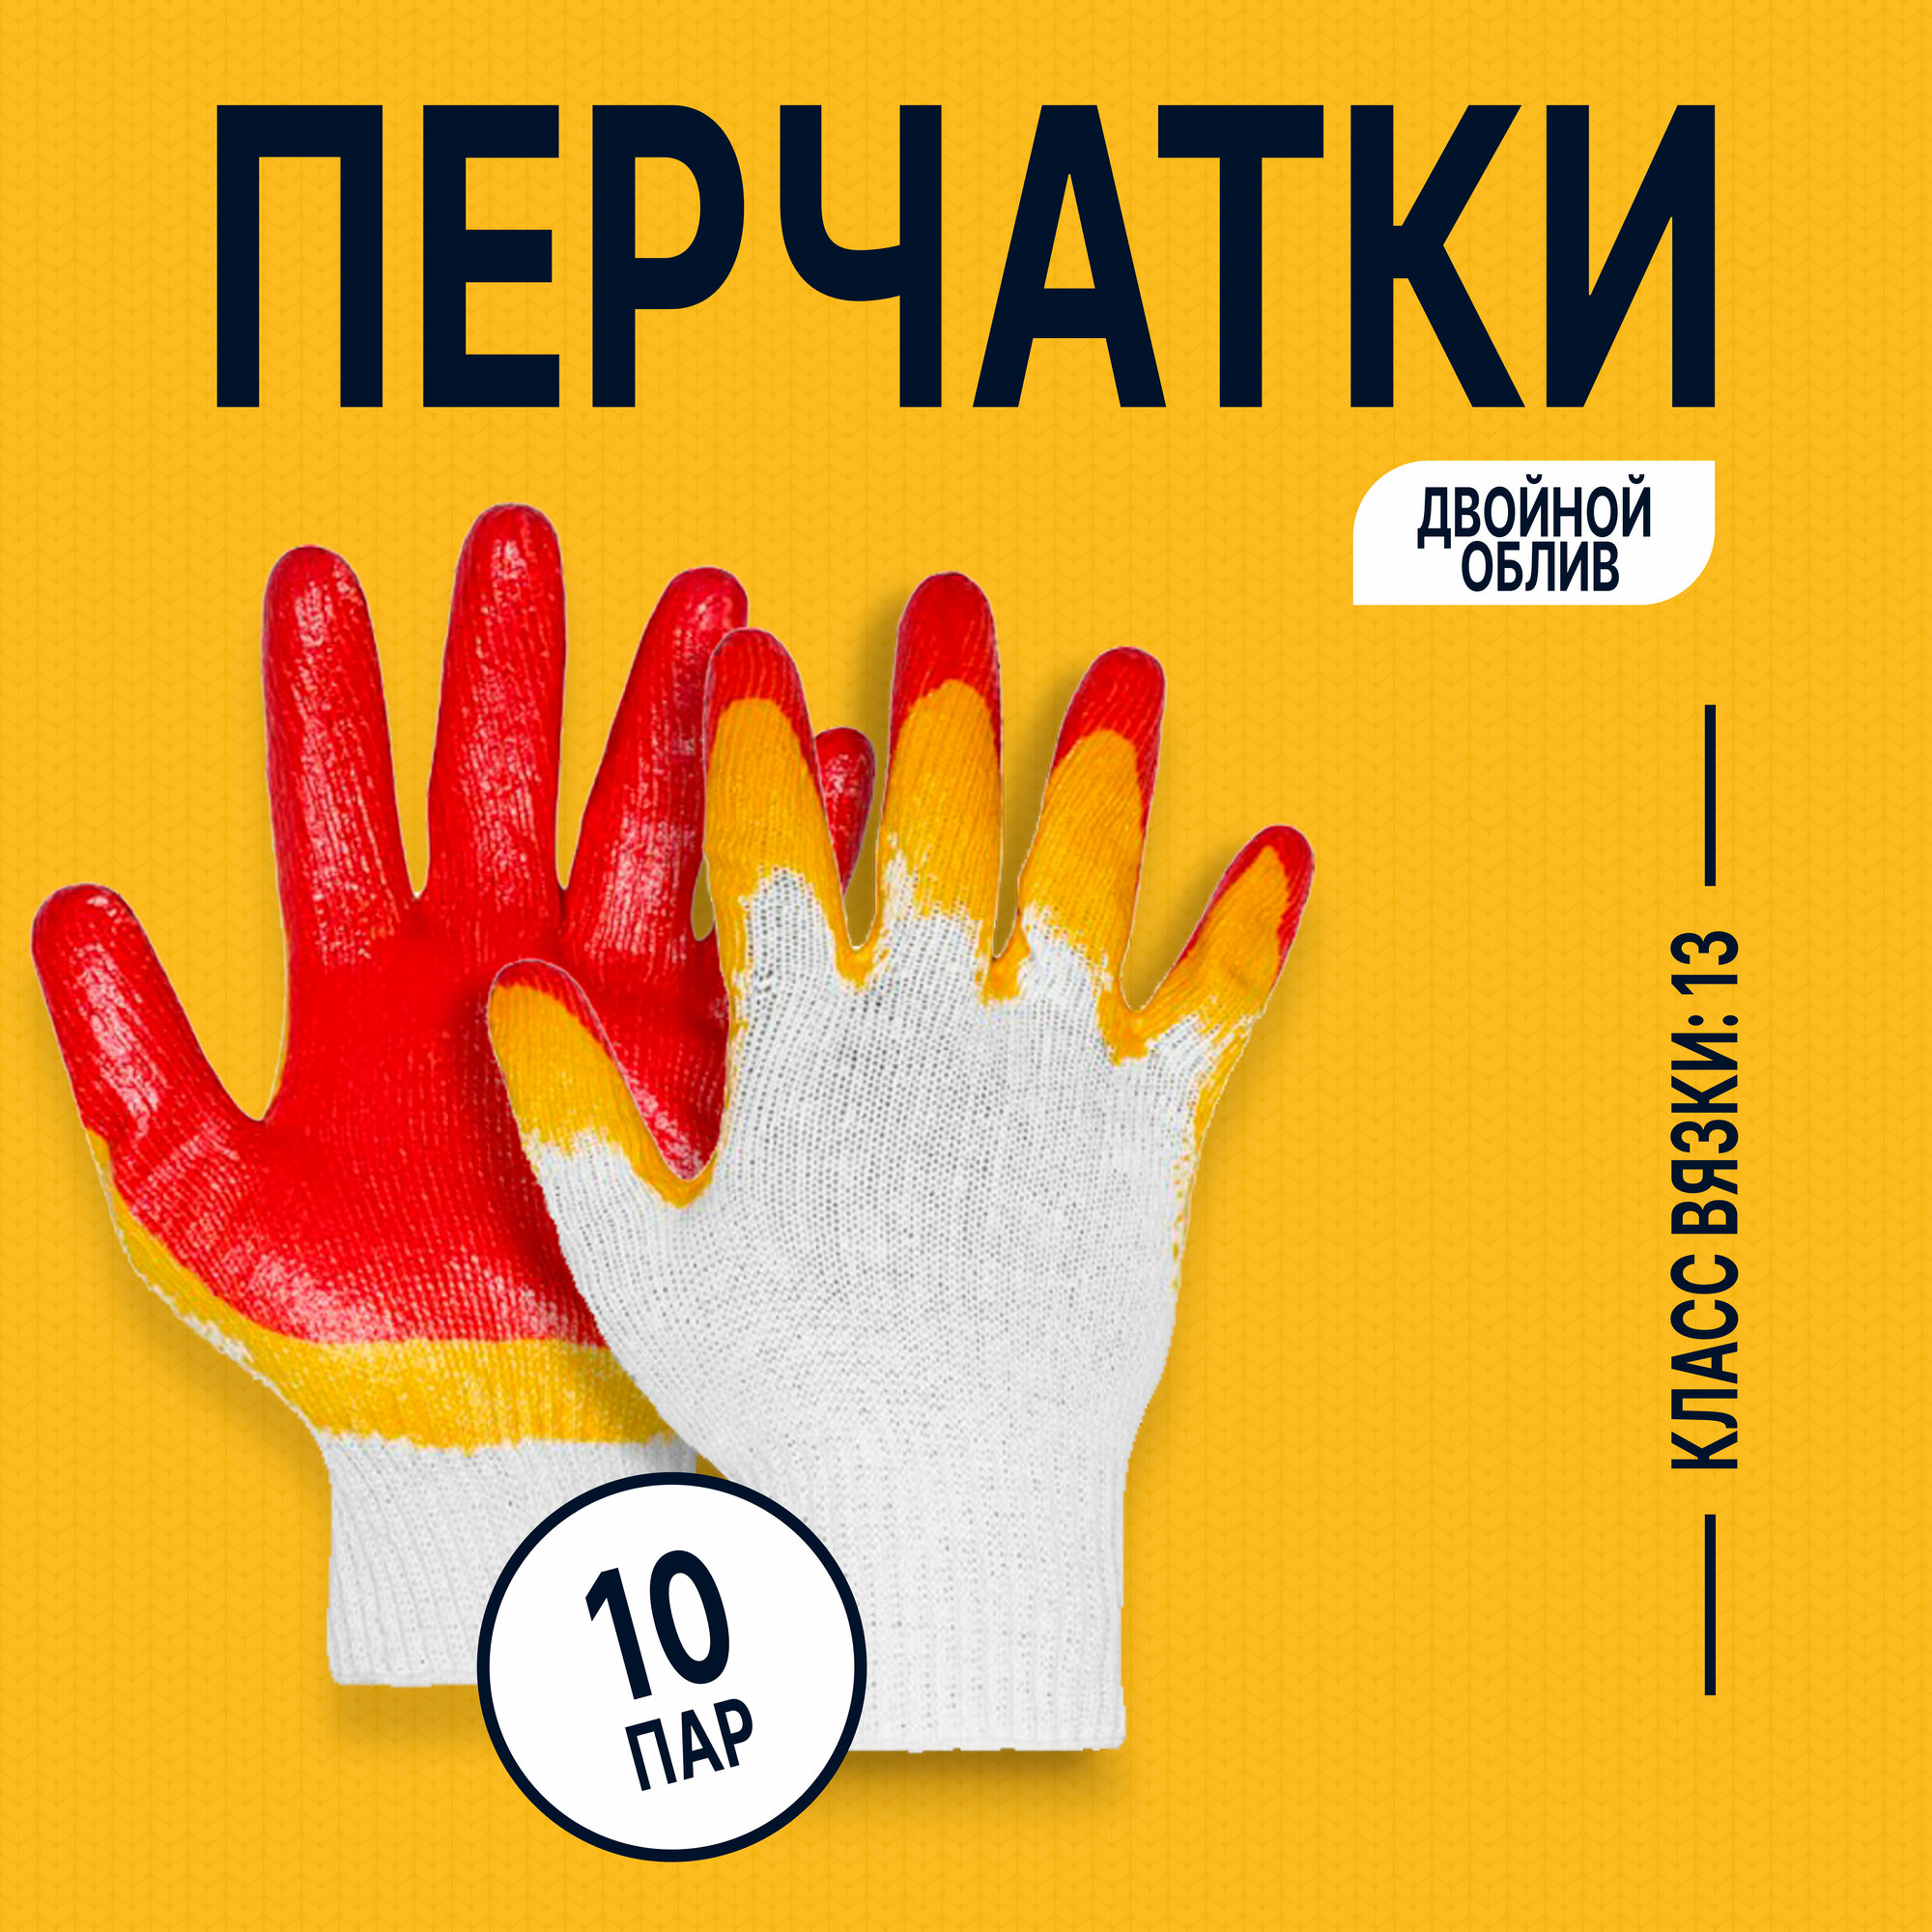 Перчатки рабочие ХБ (100% хлопок) "Альянс производителей" эконом с двойным латексным обливом 10 ПАР В упаковке